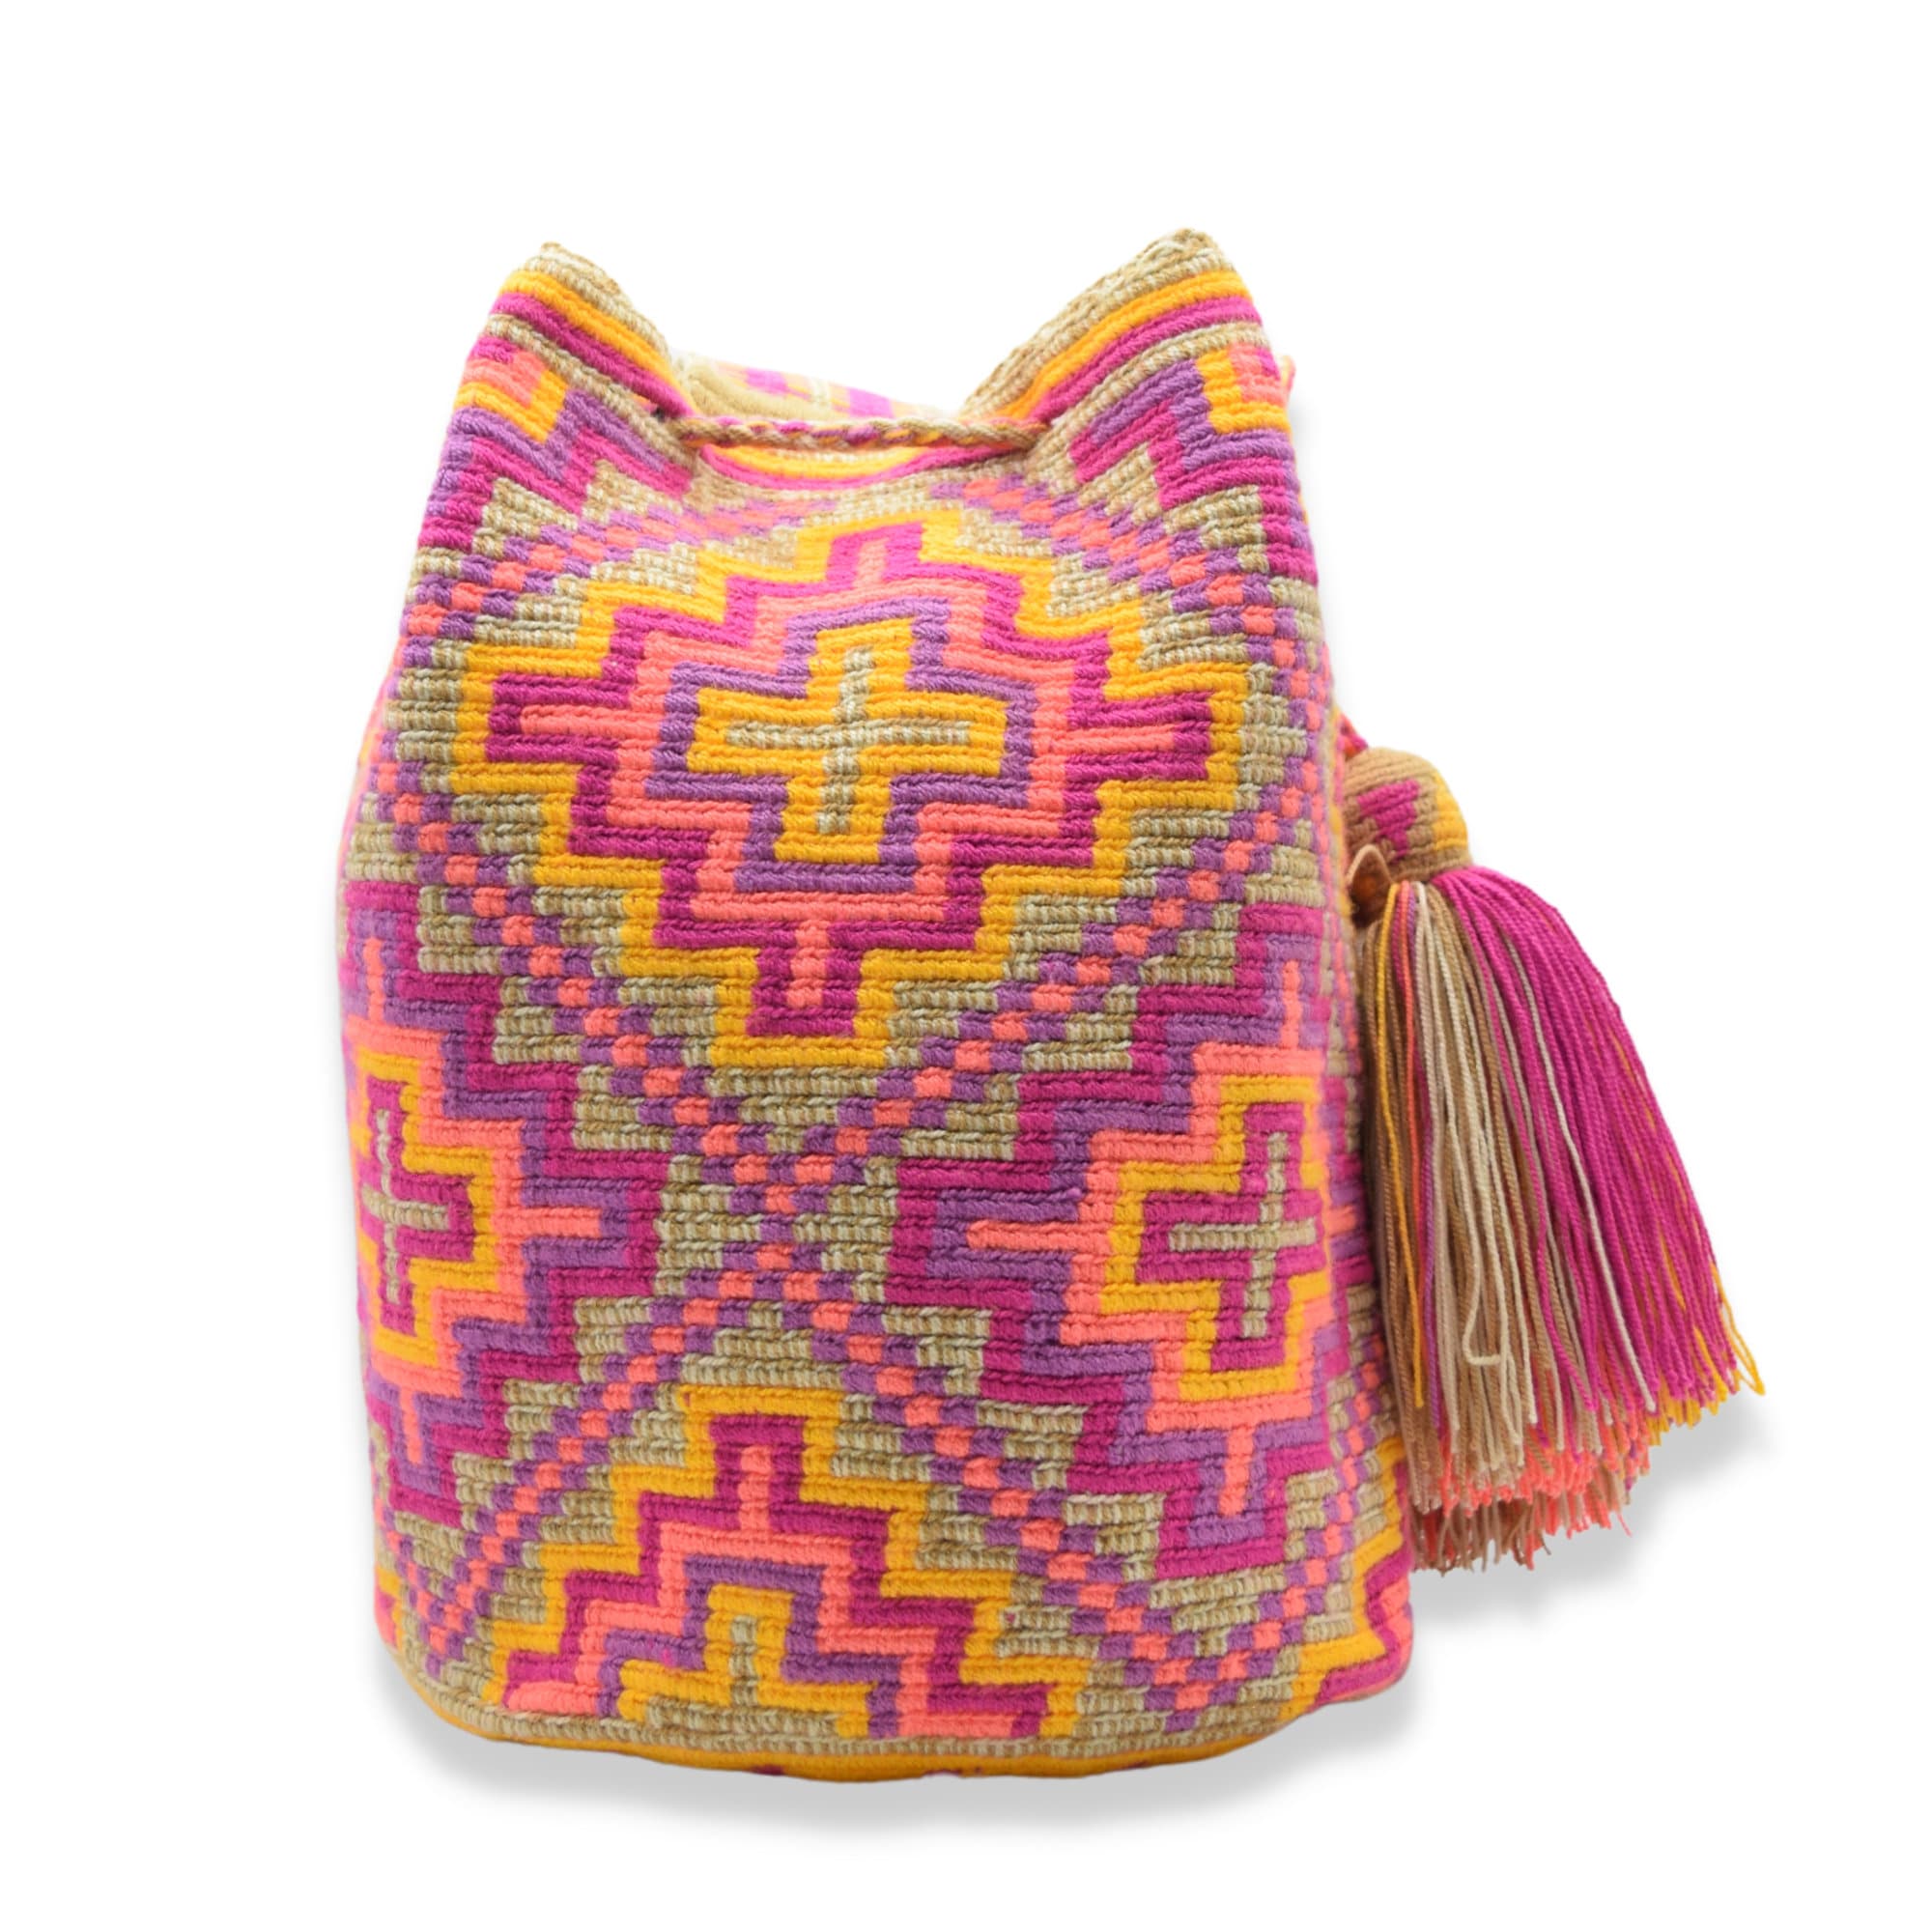 Deluxe Wayuu mochila bag | Large Tradicional | Pink and yellow crosses